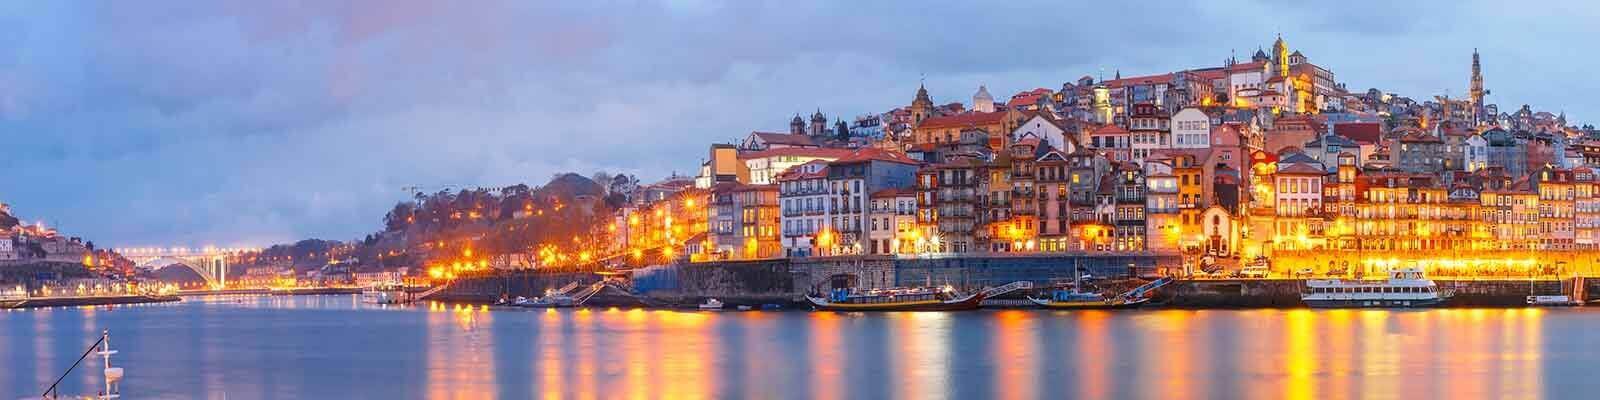 Unsere Douro-Kollektion - Finden Sie diese bei Onshore Cellars, Ihrem Yachtweinlieferanten